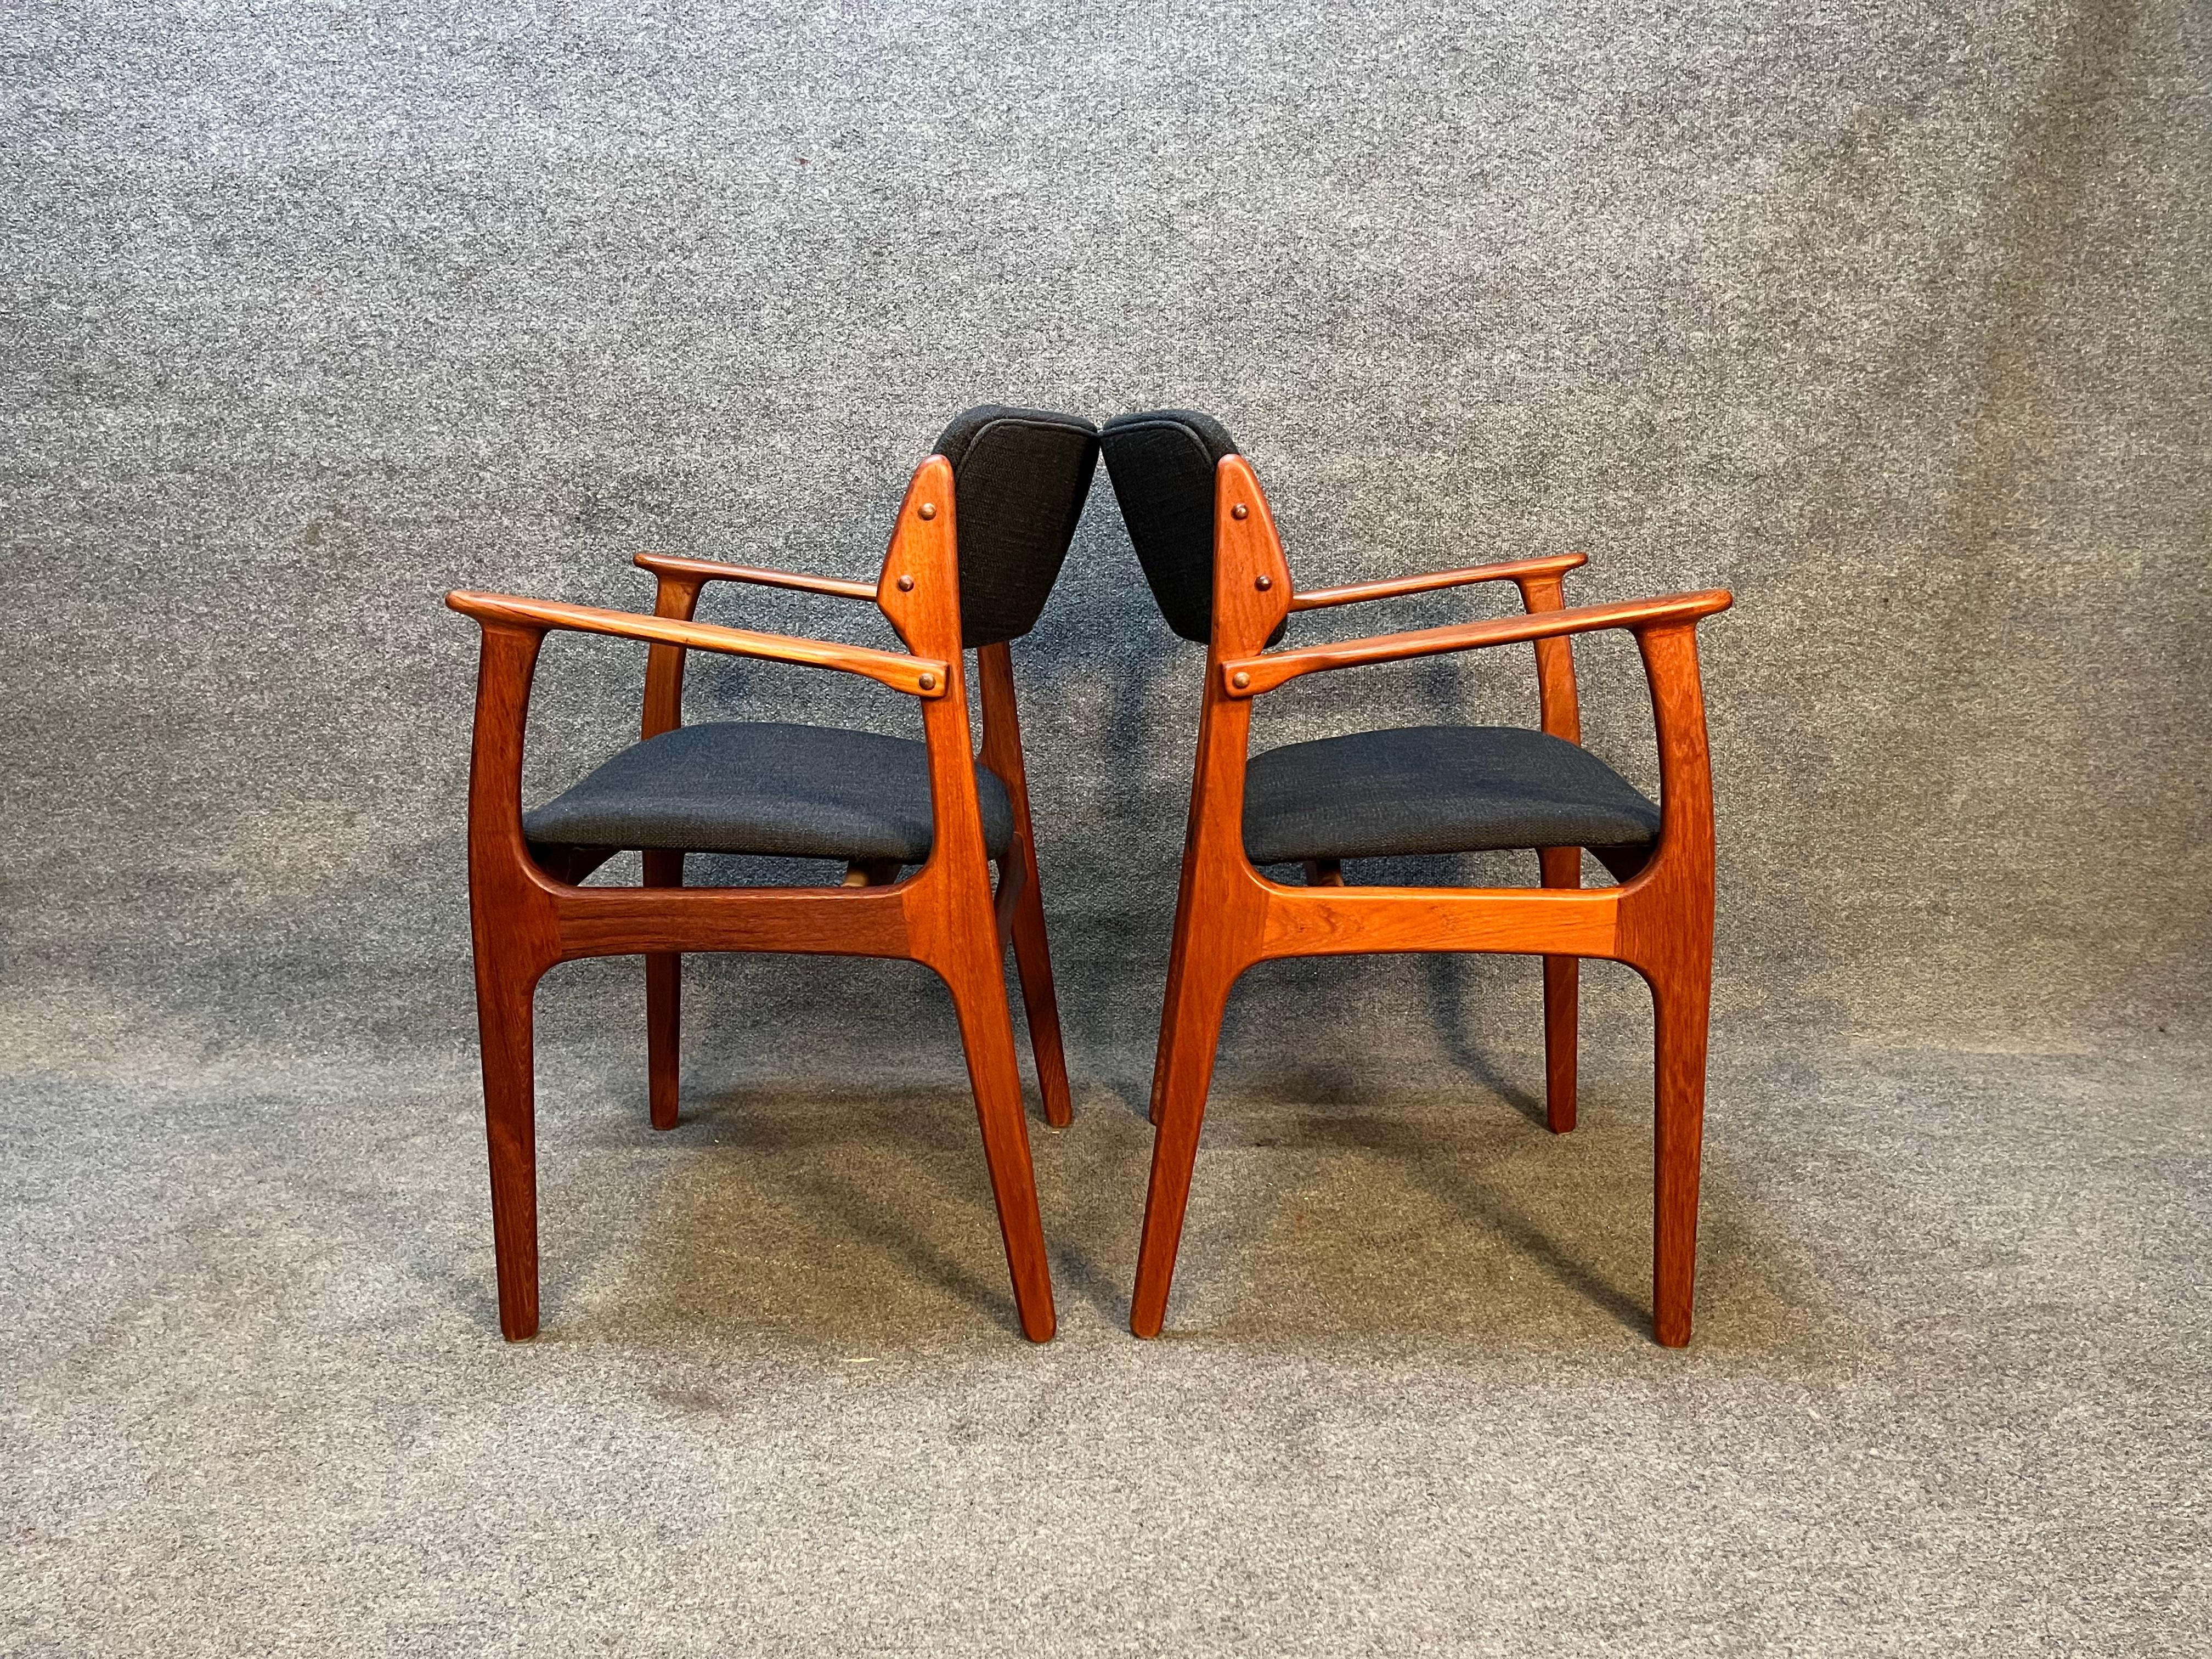 Voici une superbe paire de chaises de salle à manger en teck danoises conçues par Erik Buch, modèle 49. Ces chaises ont été entièrement restaurées et ont un tissu et une mousse noirs anthracite tout neufs. Ce sont les chaises des capitaines. Si vous